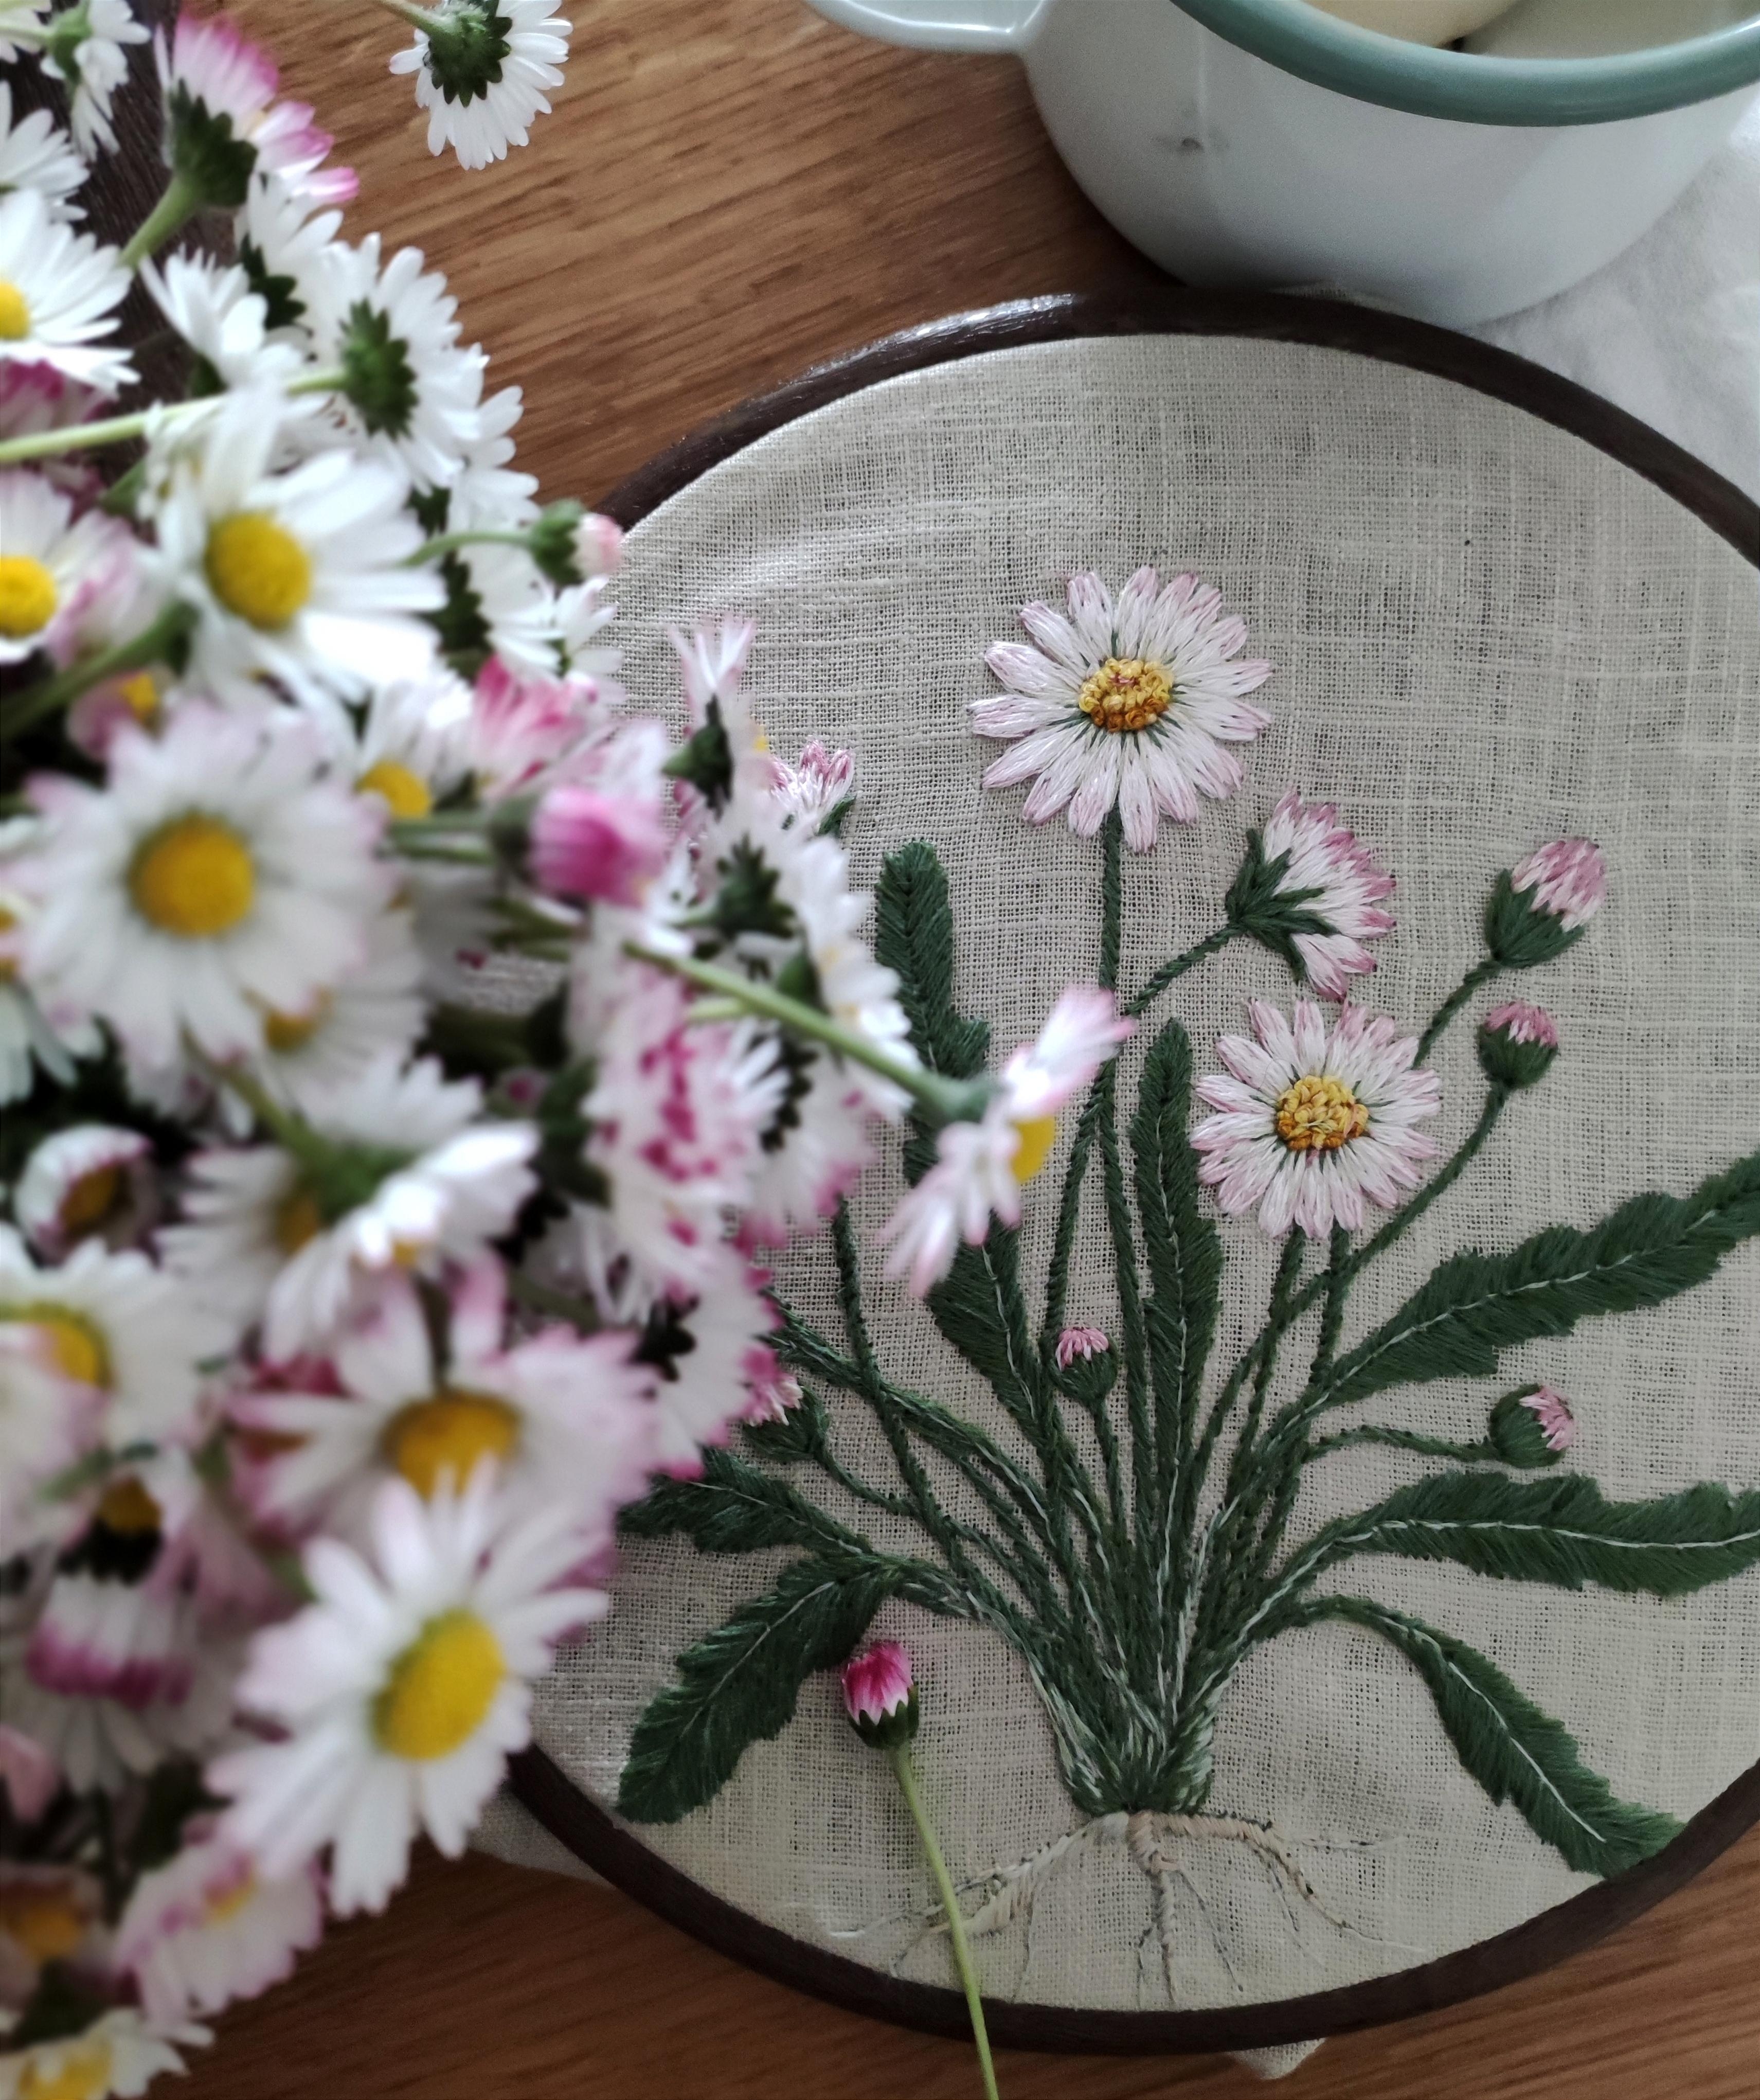 Gänseblümchen in Hülle und Fülle 💮🌸 #botanicalembroidery #wildeblumen #blumenliebe #leine #frühling